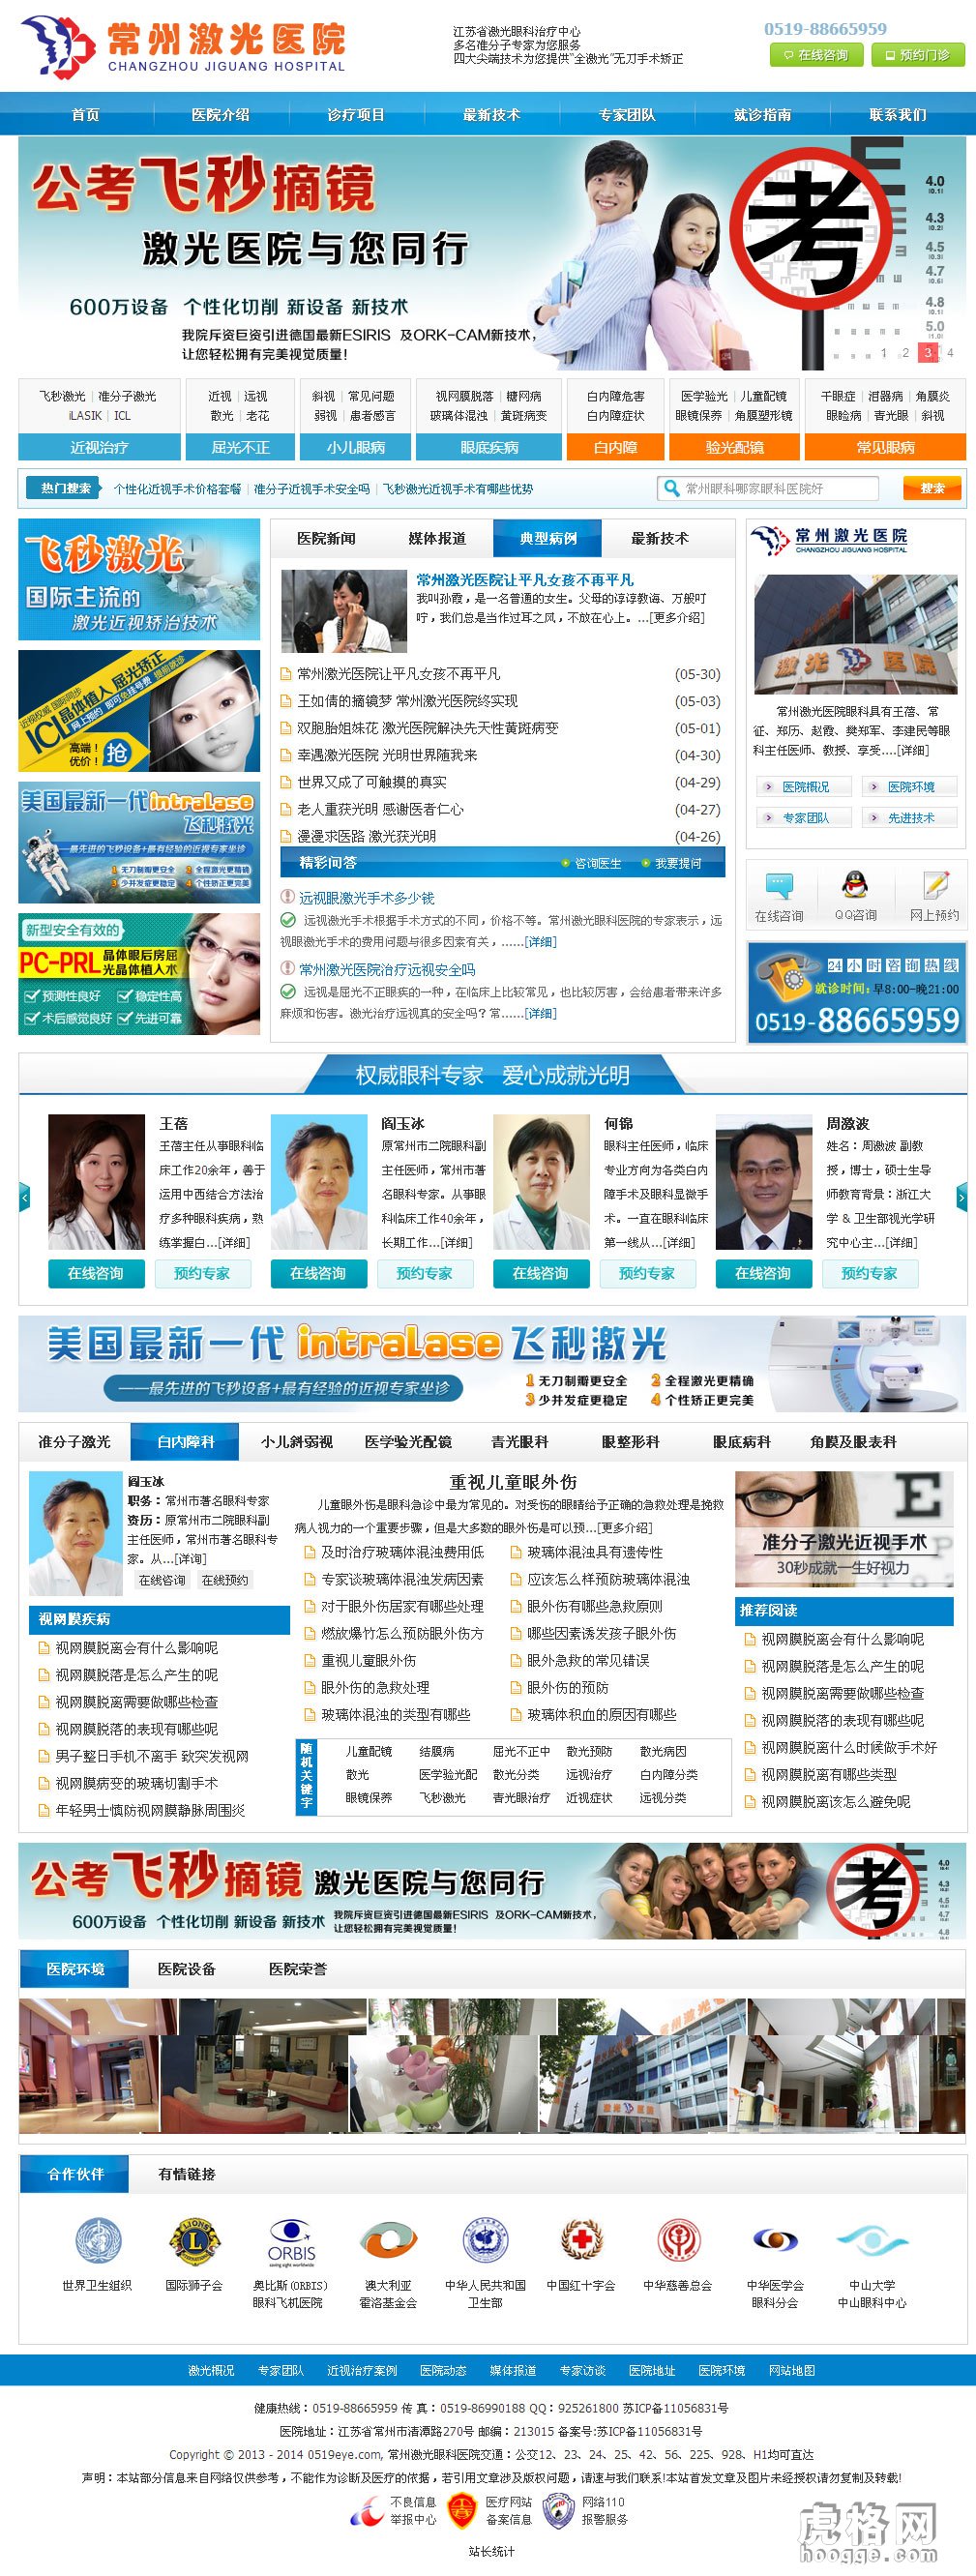 帝国CMS模板 蓝色风格经典专科医院网站模板